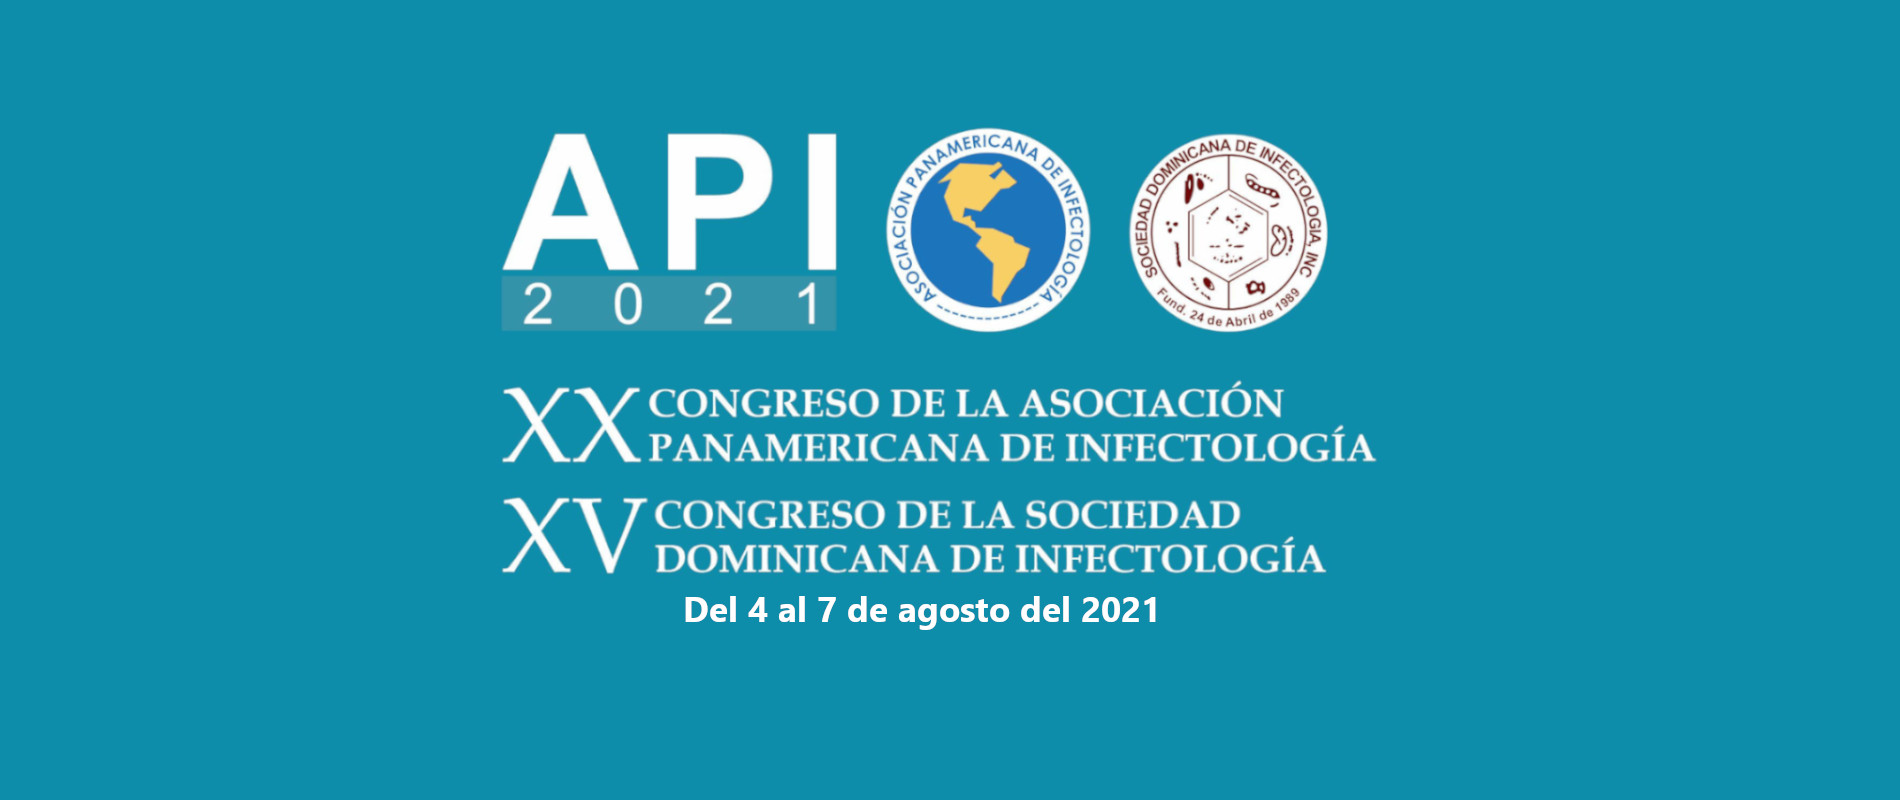 Congreso de la Sociedad dominicana de infectologia 2021